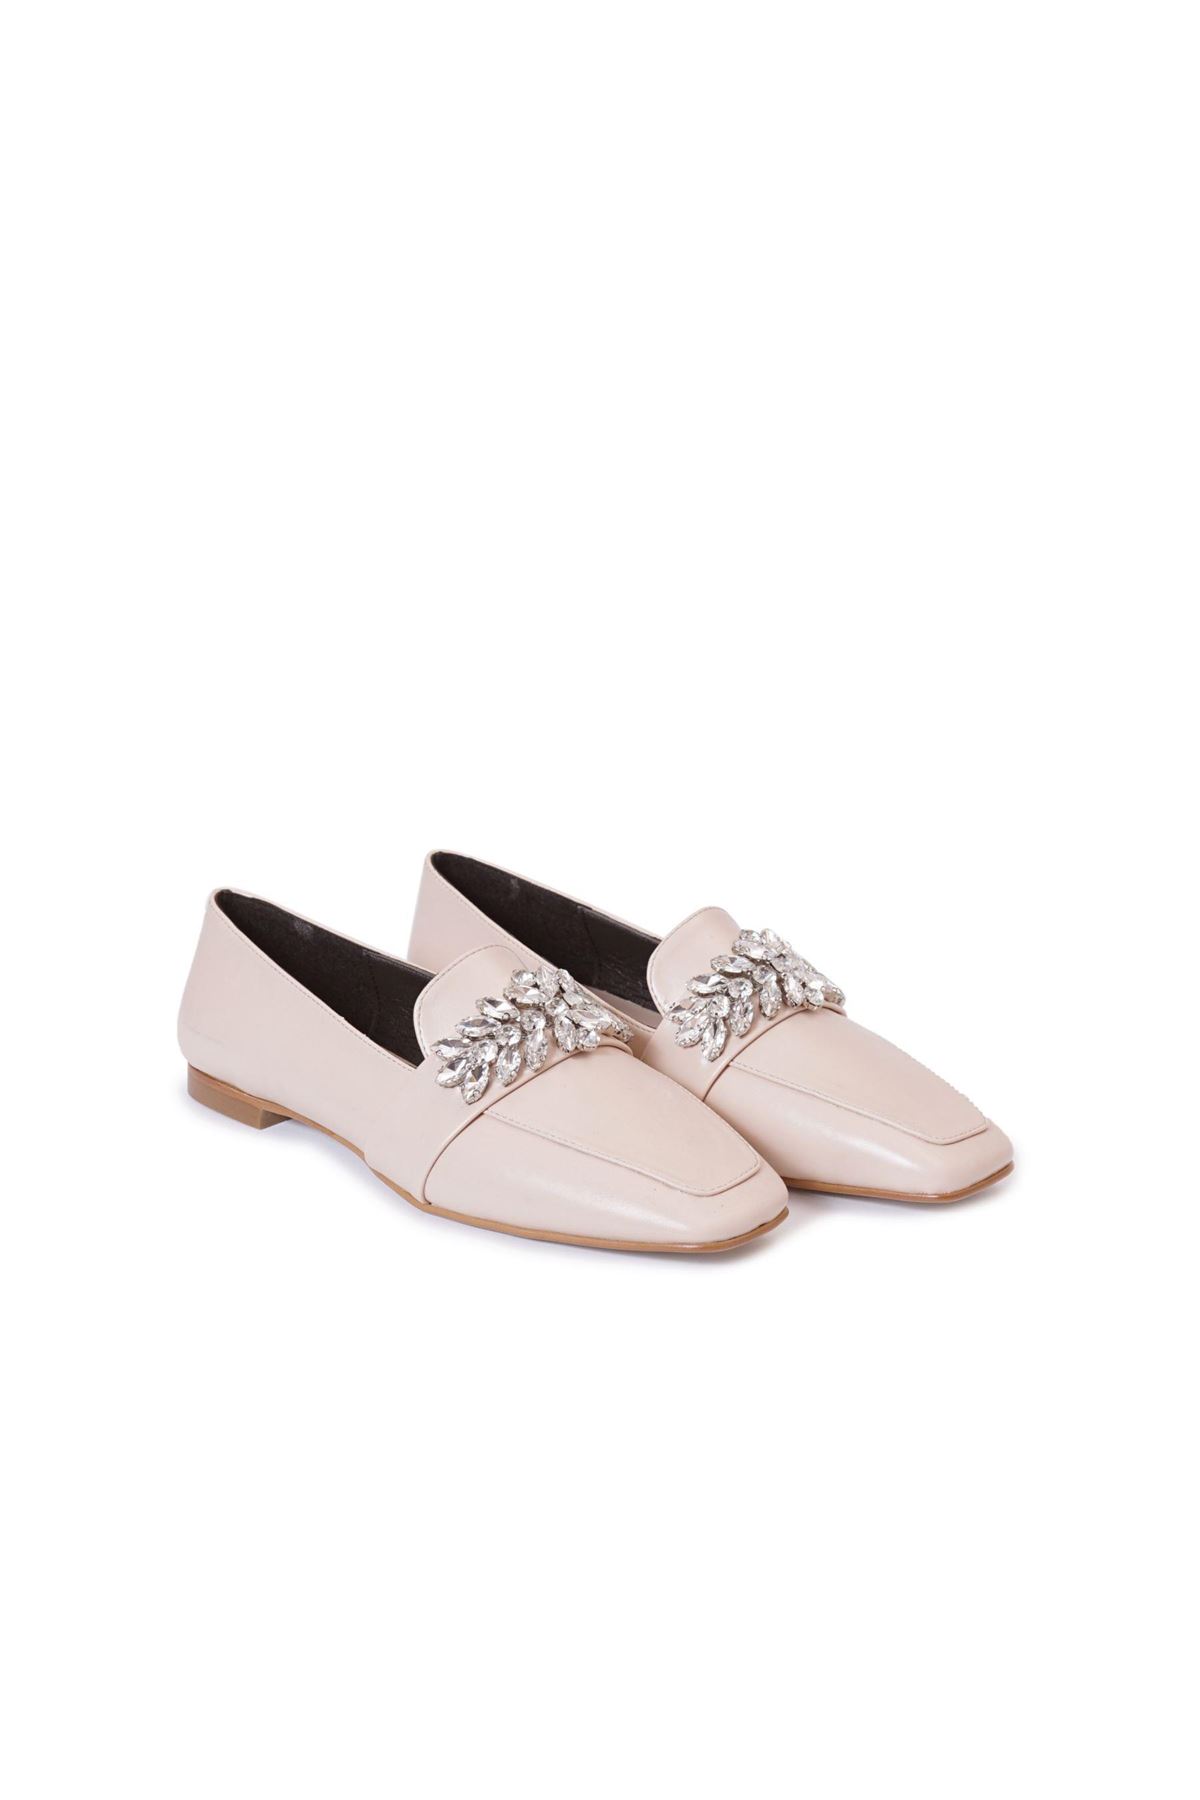 Kadın Çiçek Taşlı Loafer Ayakkabı - Bej